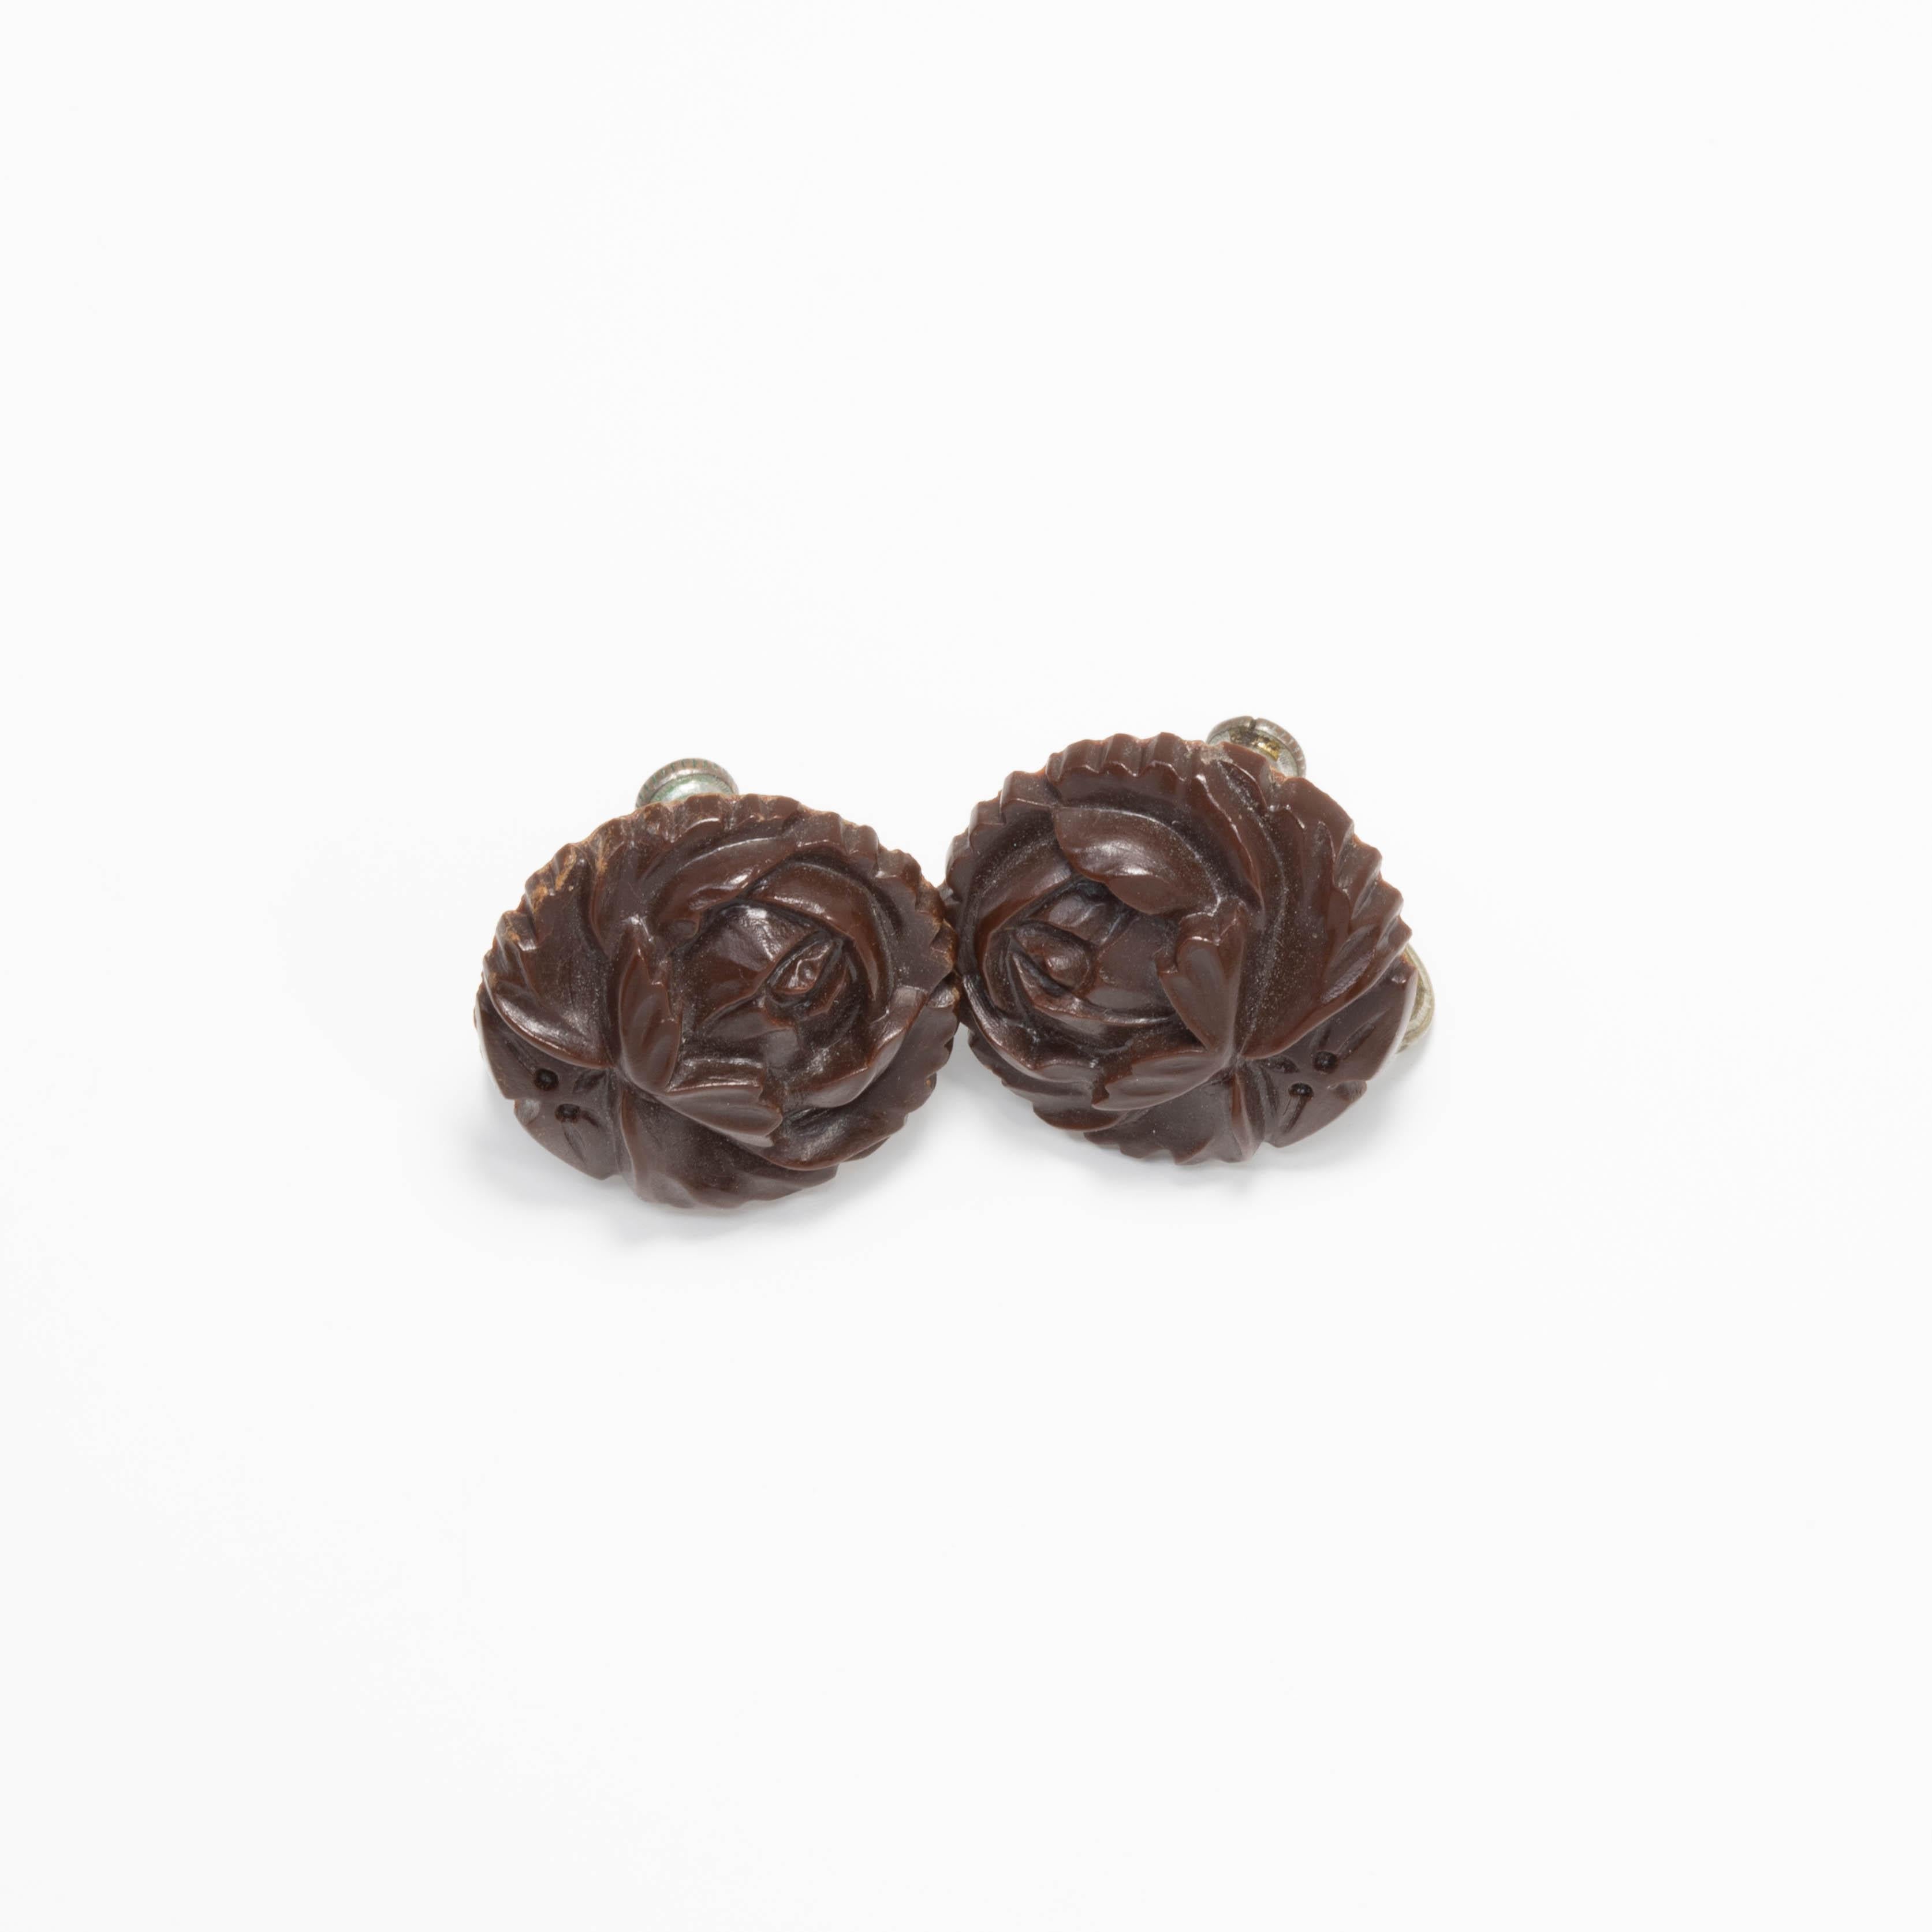 A pair of blooming bakelite roses in dark red / brown. Vintage earrings with silvertone screw-back hardware.